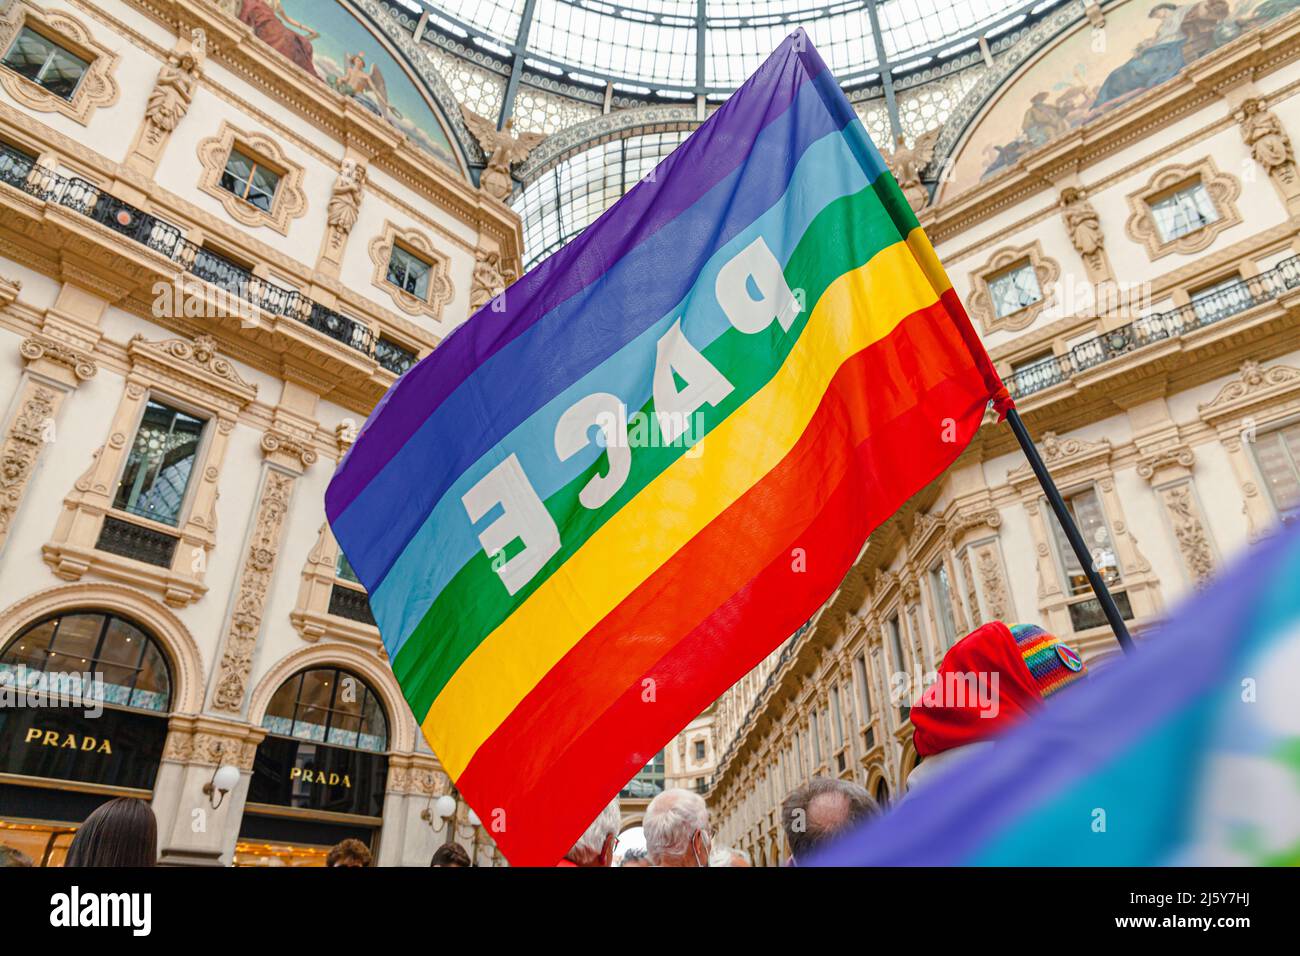 Un activista por la paz tiene una bandera arcoiris durante una manifestación pacifista contra el fascismo y la guerra entre Rusia y Ucrania. Bandera de la paz en Milán, Italia Foto de stock